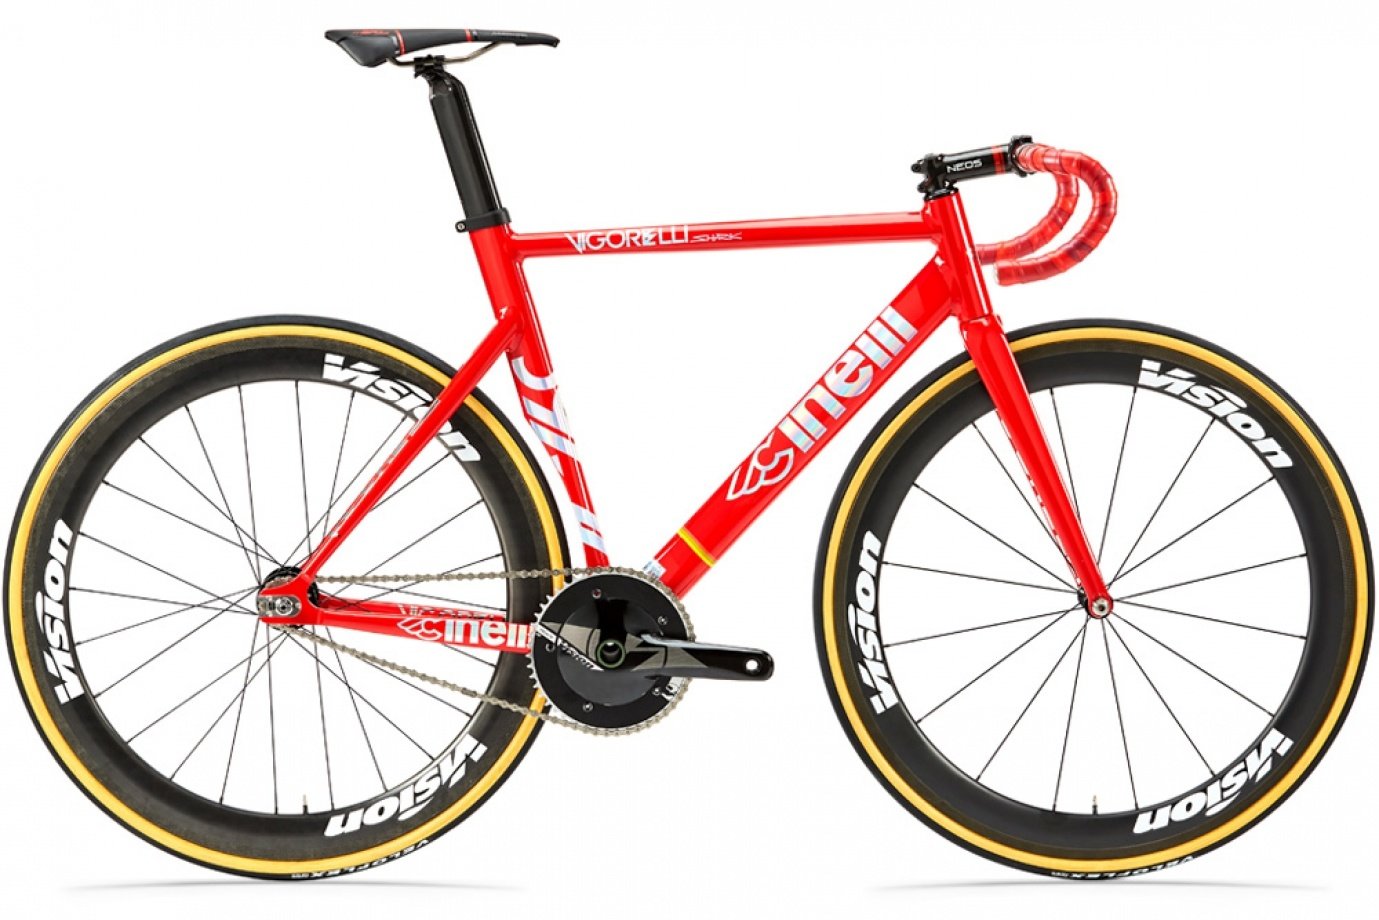 Crveni sportski aerodinamički fixie bicikl marke Cinelli s jedinom brzinom, sportskim sedlom i savinutim sportskim volanom.